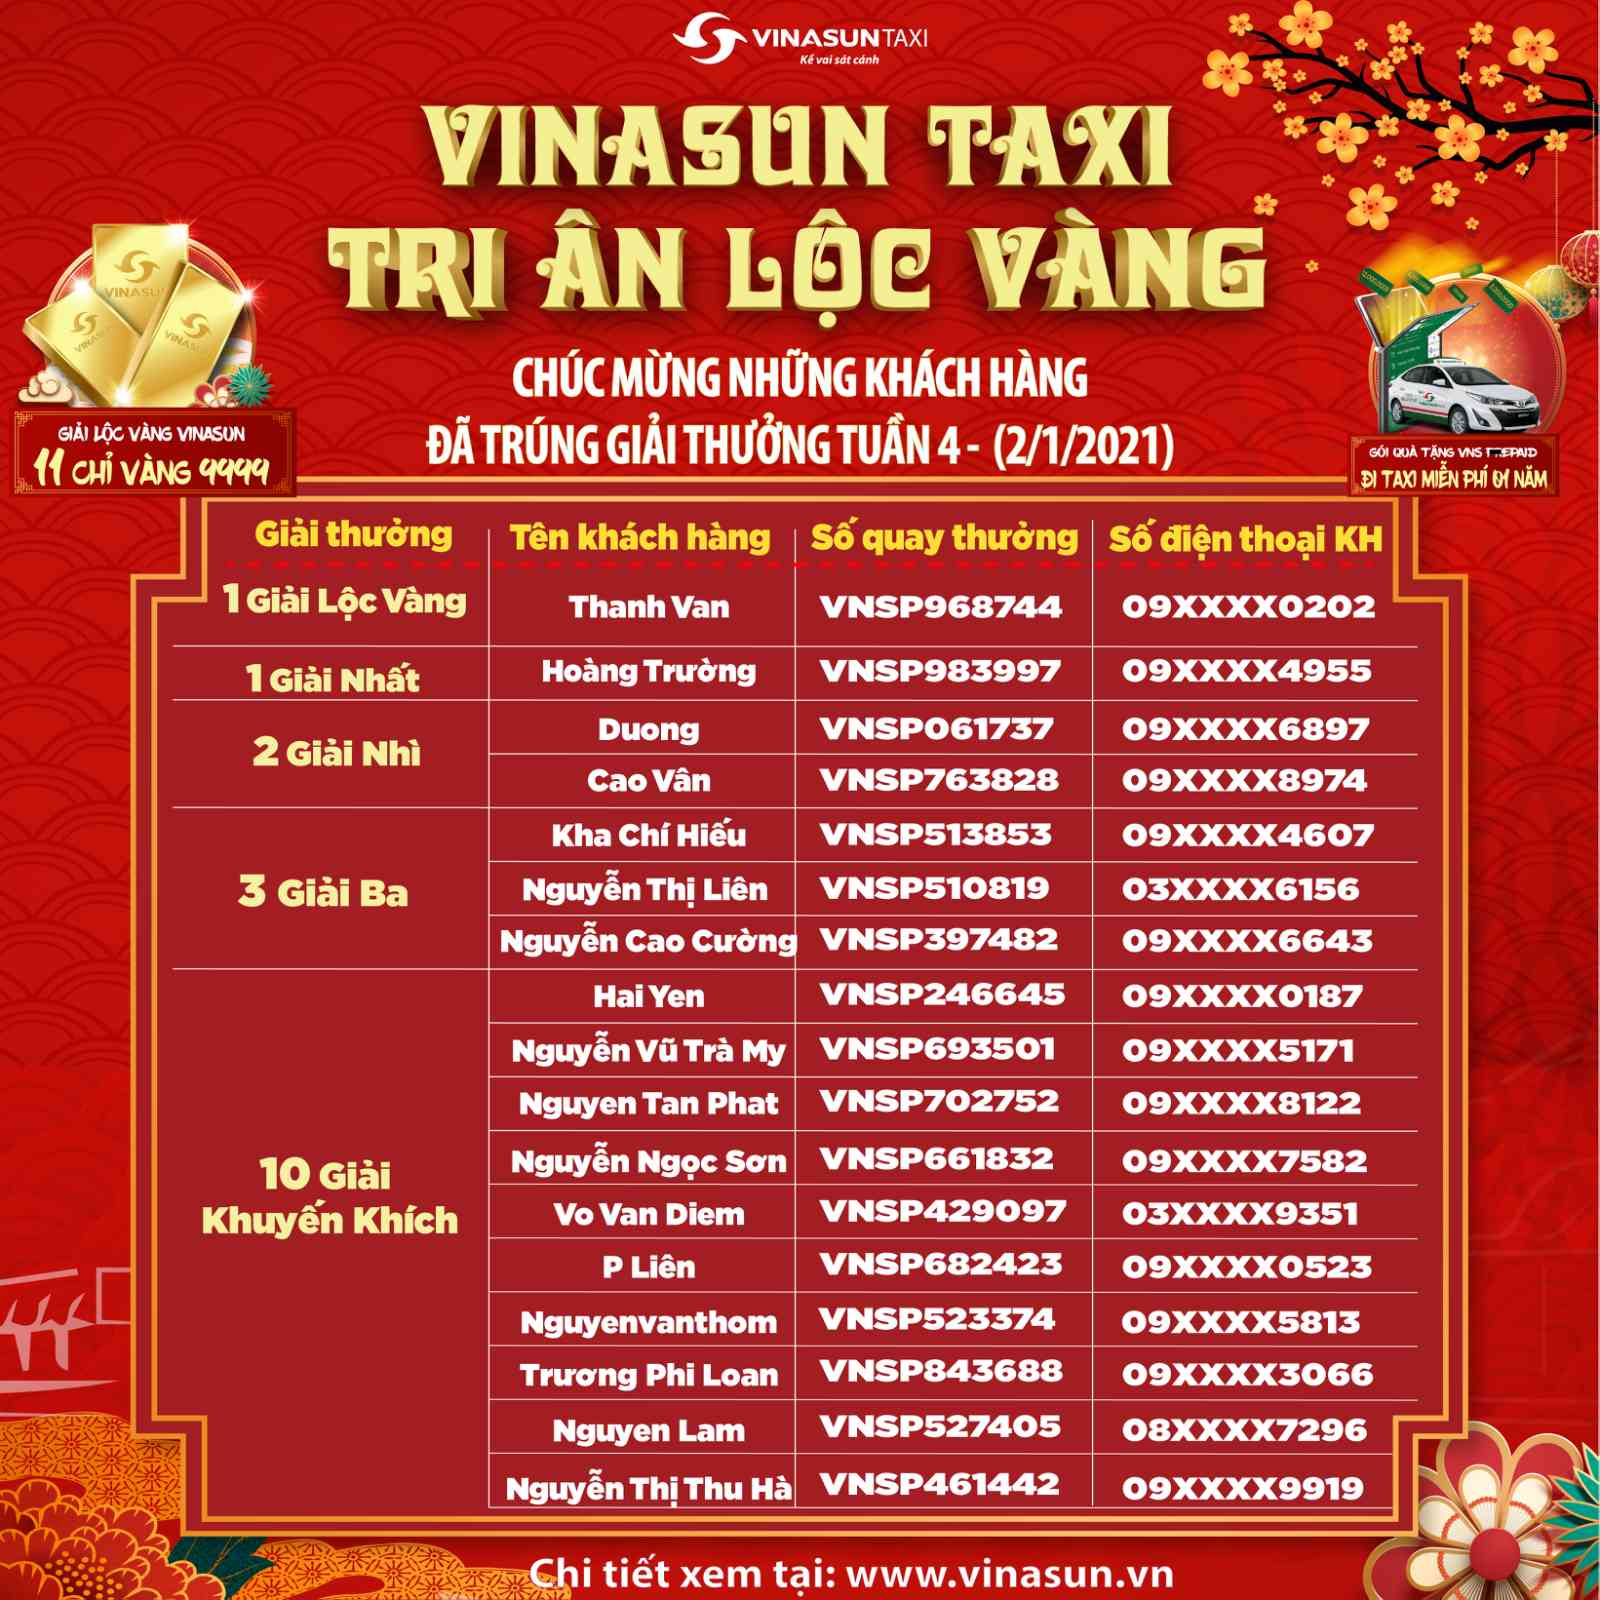 Kết quả trúng thưởng chương trình Vinasun Taxi - Tri Ân Lộc Vàng - Tuần 4